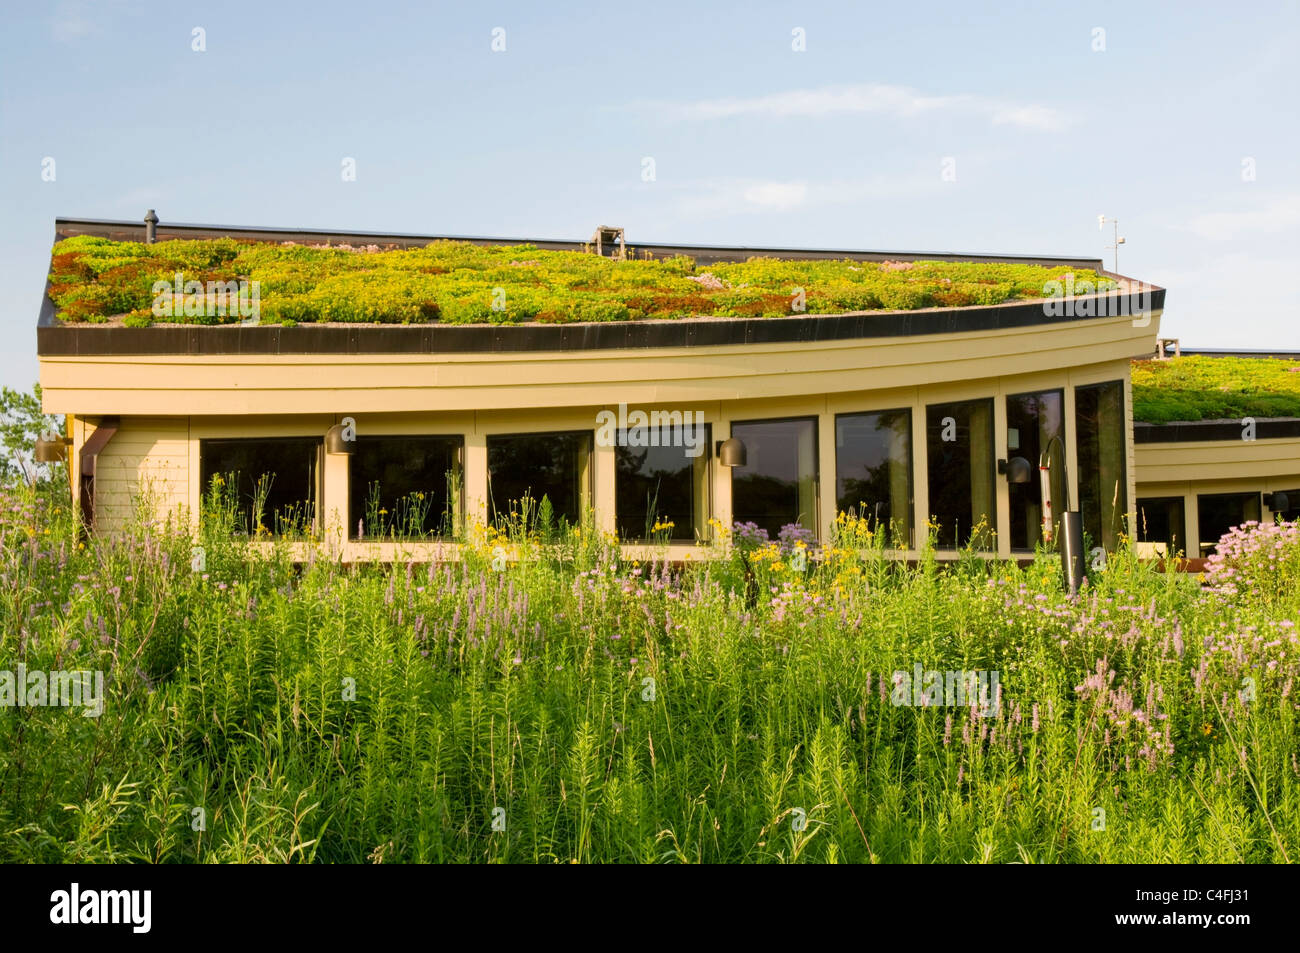 Libanon-Hügel-Besucherzentrum in Eagan Minnesota, die Vegetation auf Gründach und Garten im Vordergrund Stockfoto